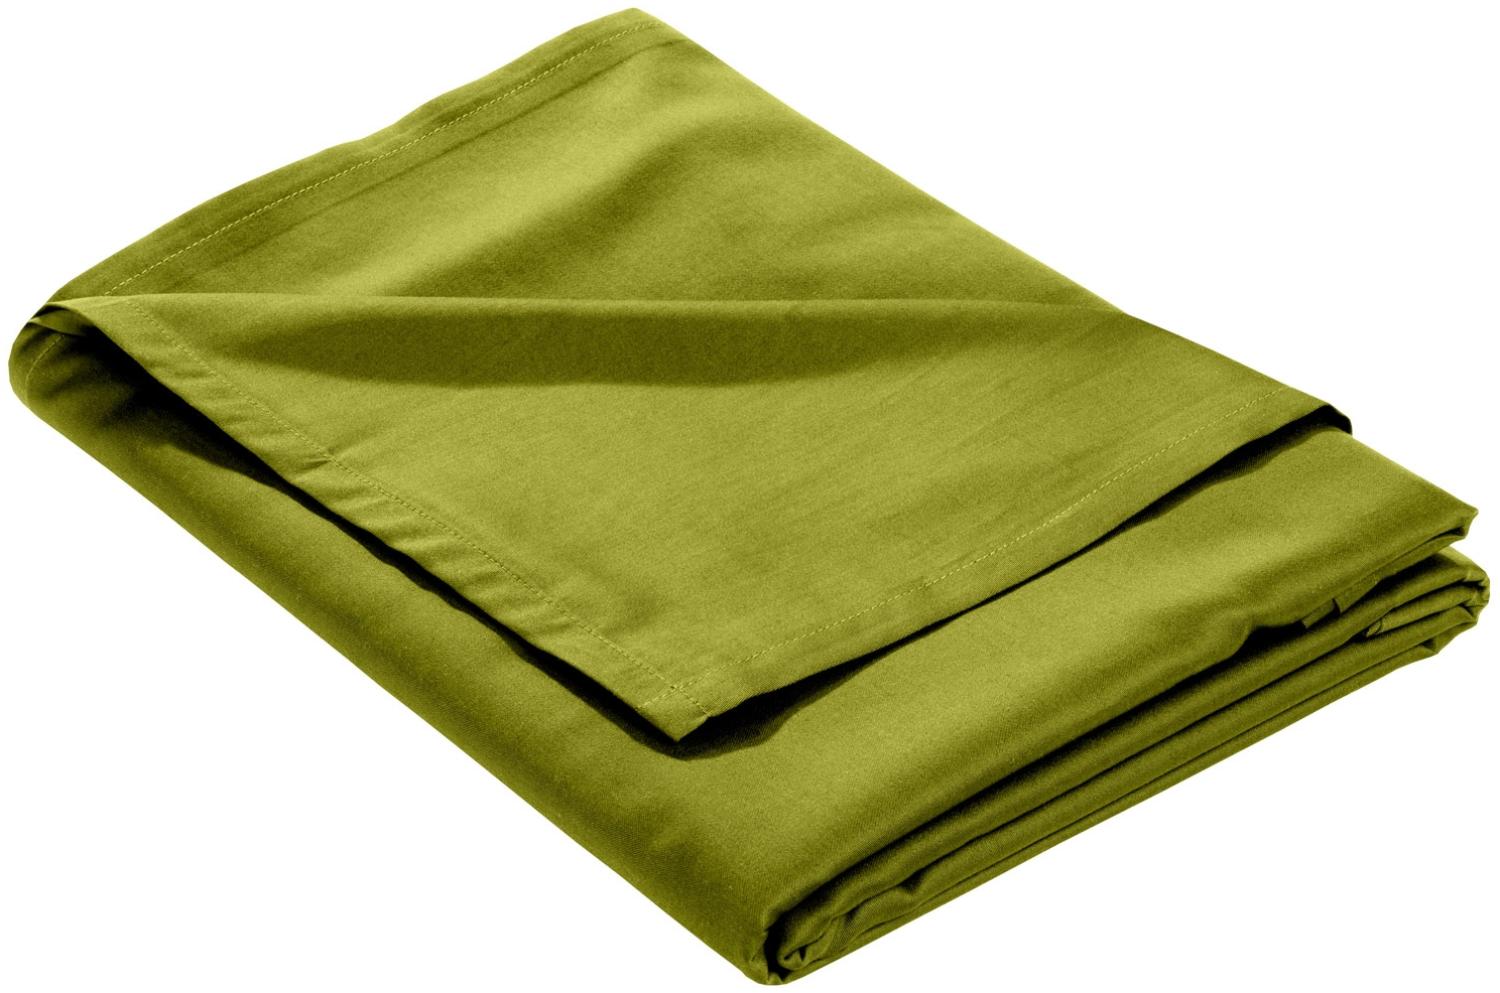 Mako Satin Bettlaken ohne Gummizug grün 240x280cm Bild 1